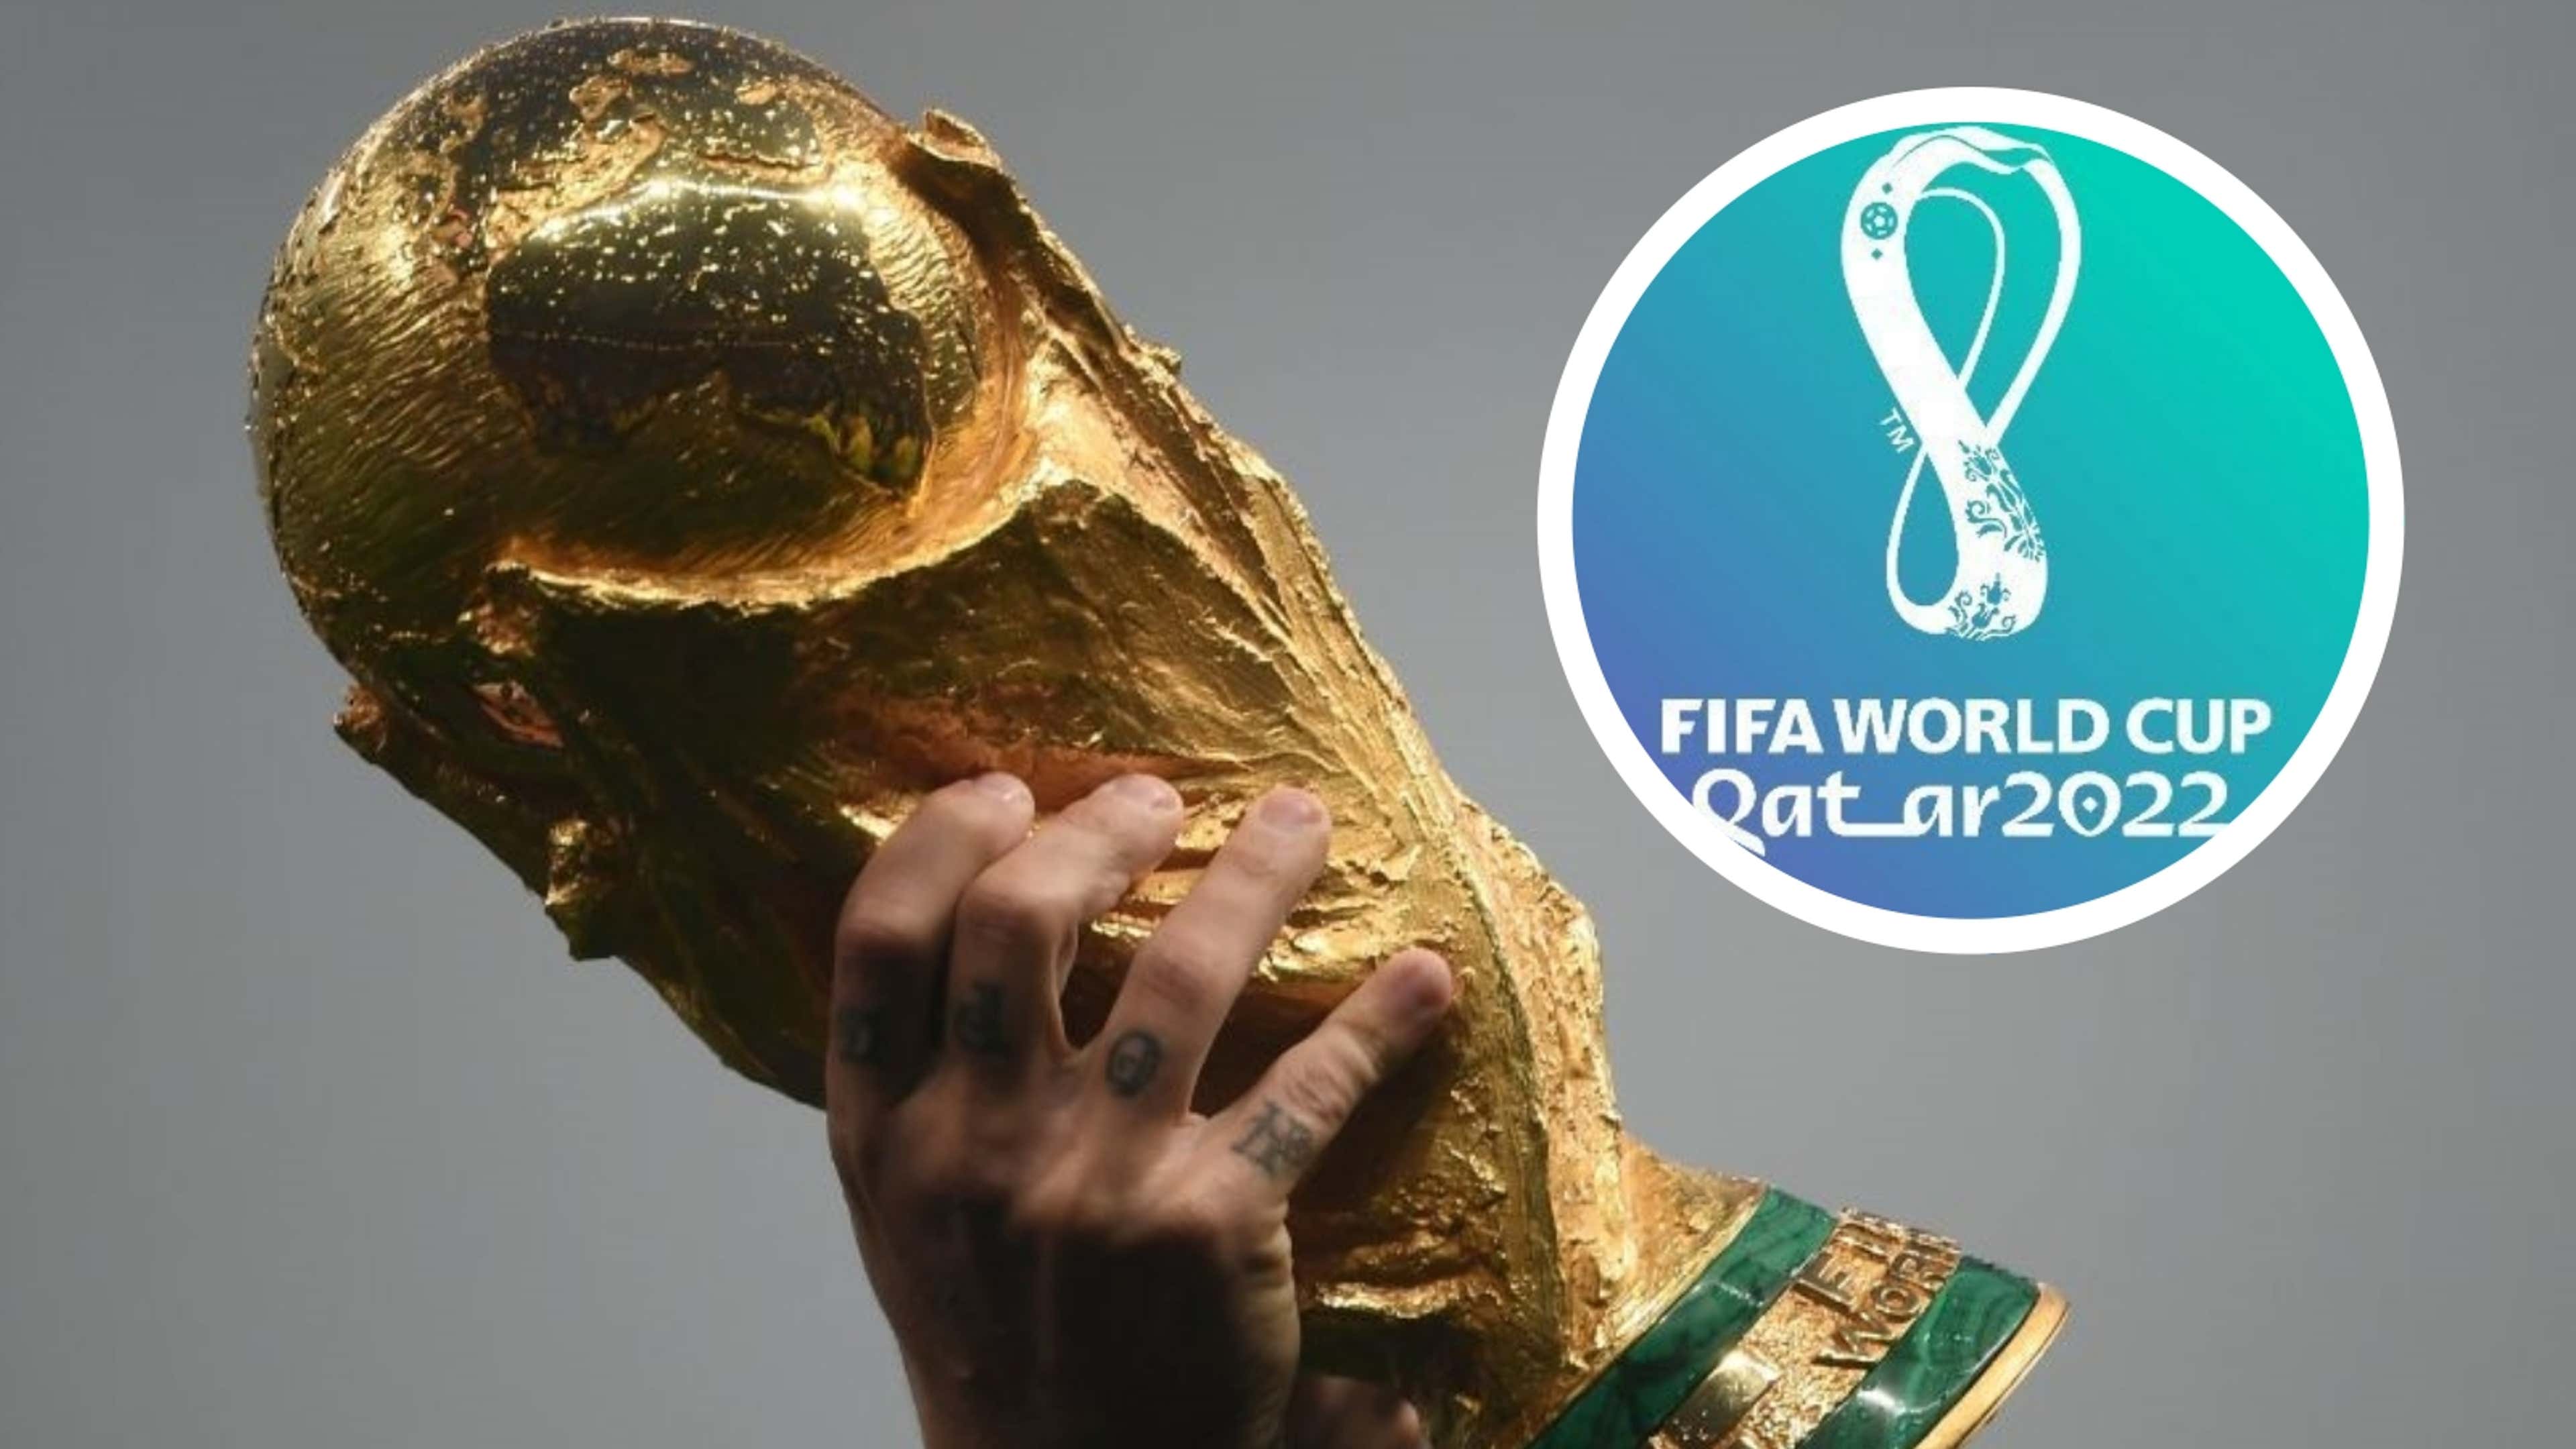 Regulamento da Copa do Mundo 2022: Veja regras do Mundial